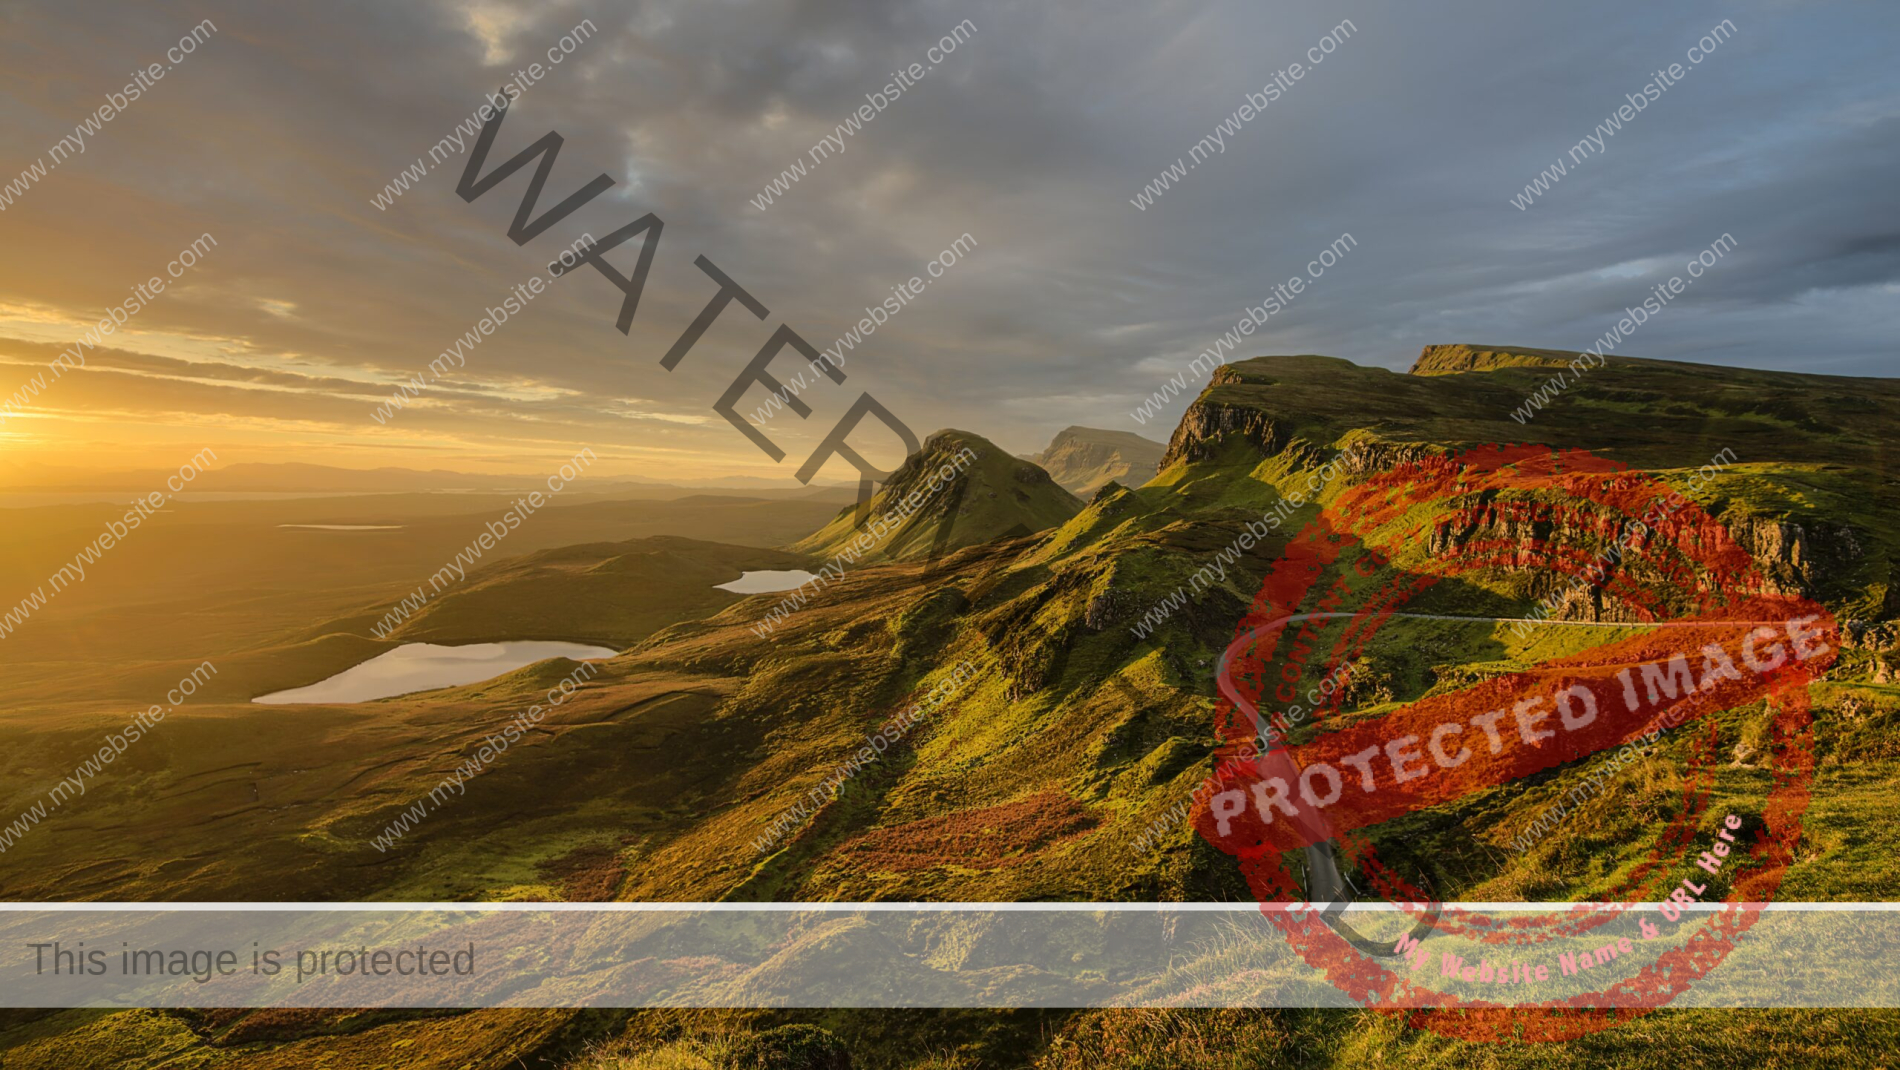 wild landscape in Scotland